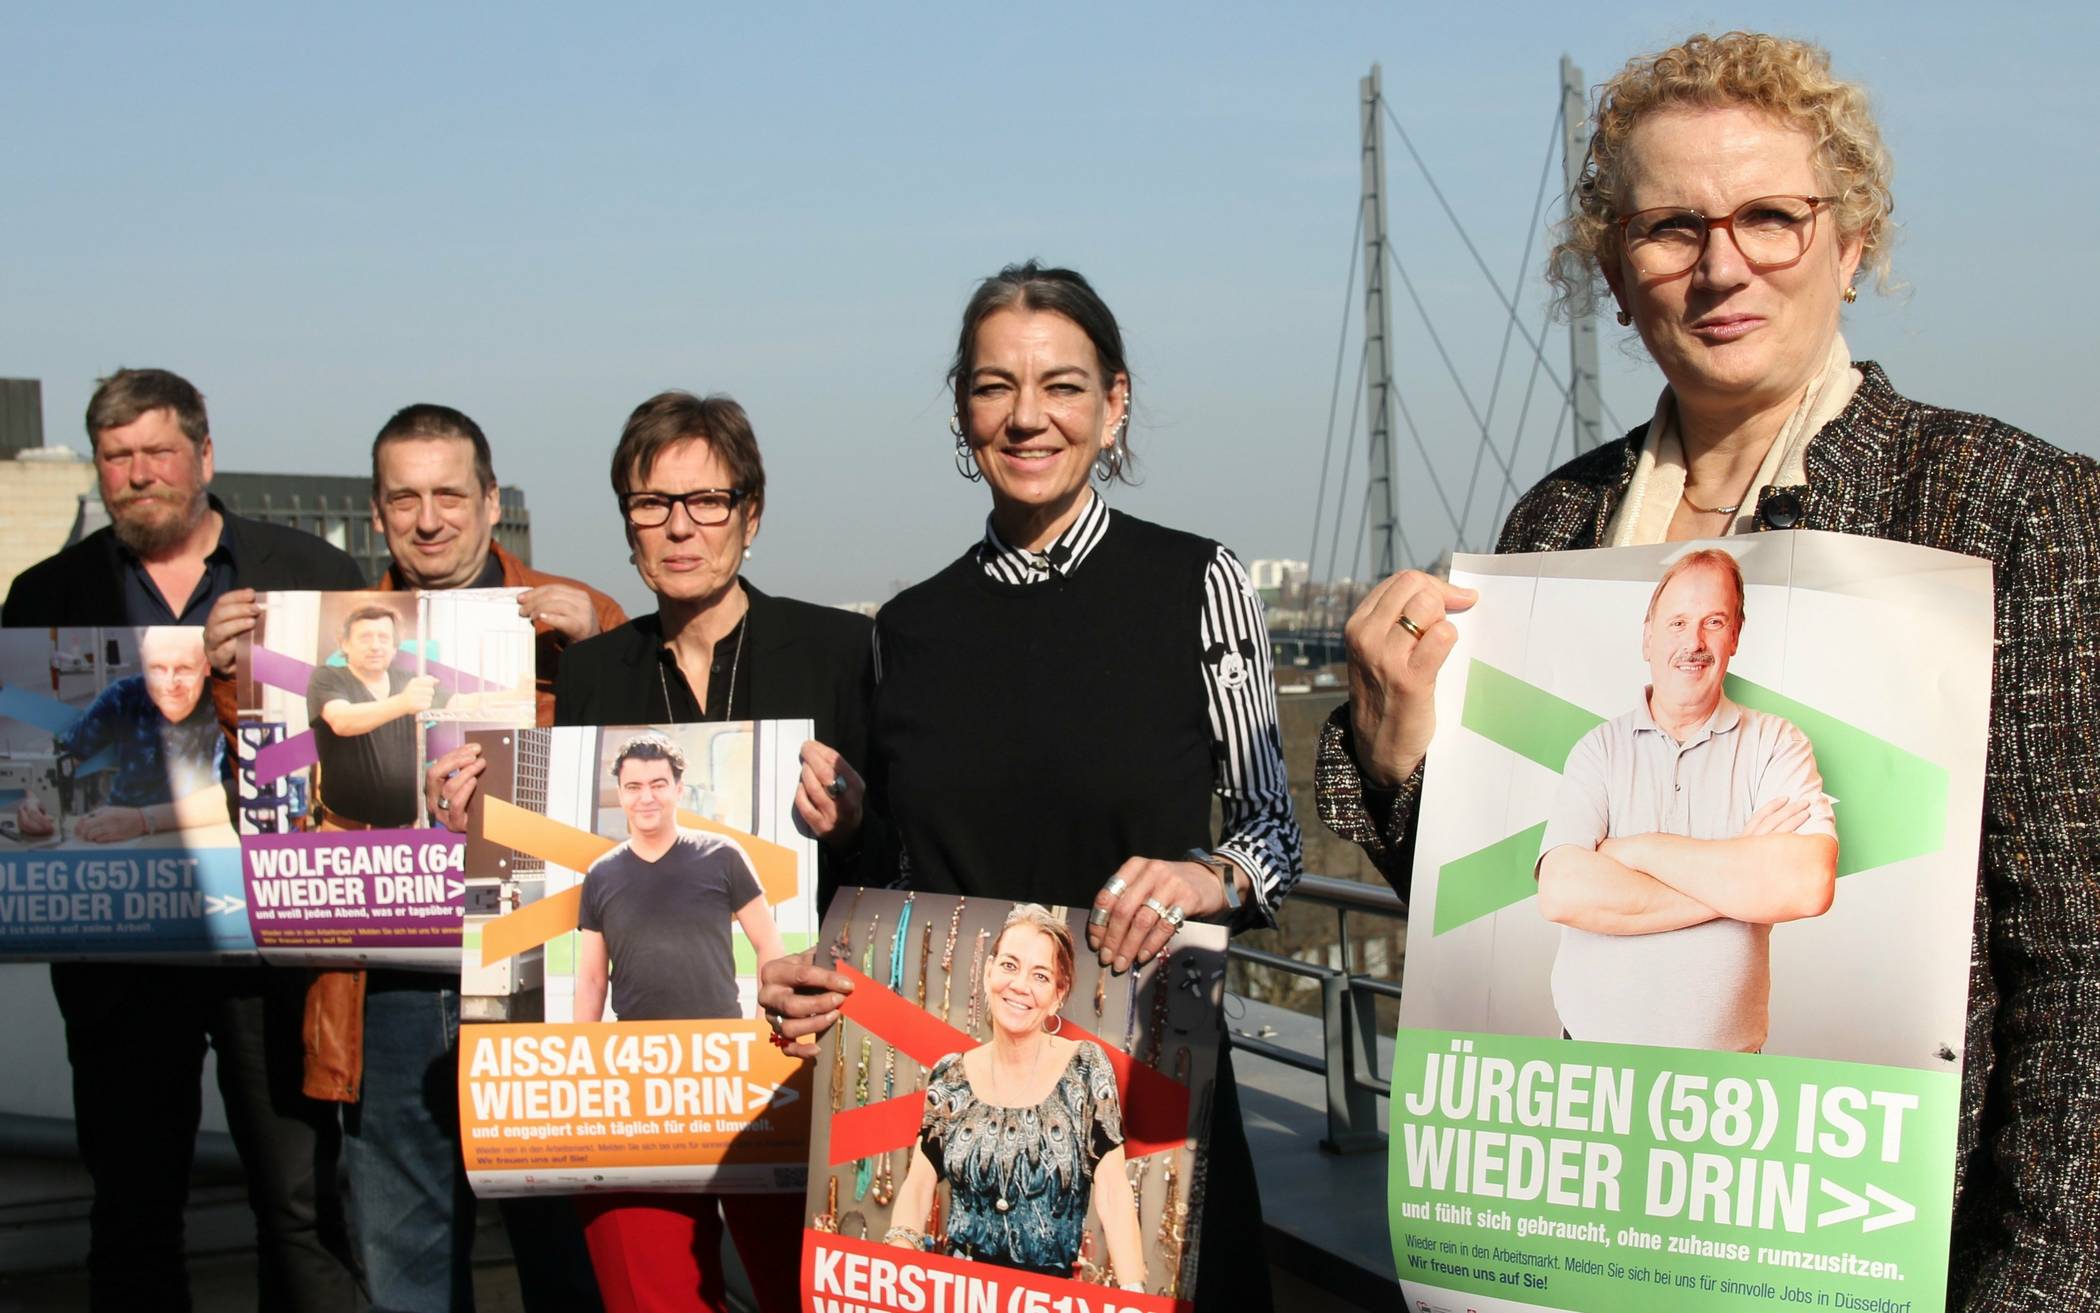   Marion Warden, Kampagnen-Vertreterin Kerstin, Claudia Diederich, Kampagnen-Vertreter Wolfgang und Christian Wiglow (v. r.).  